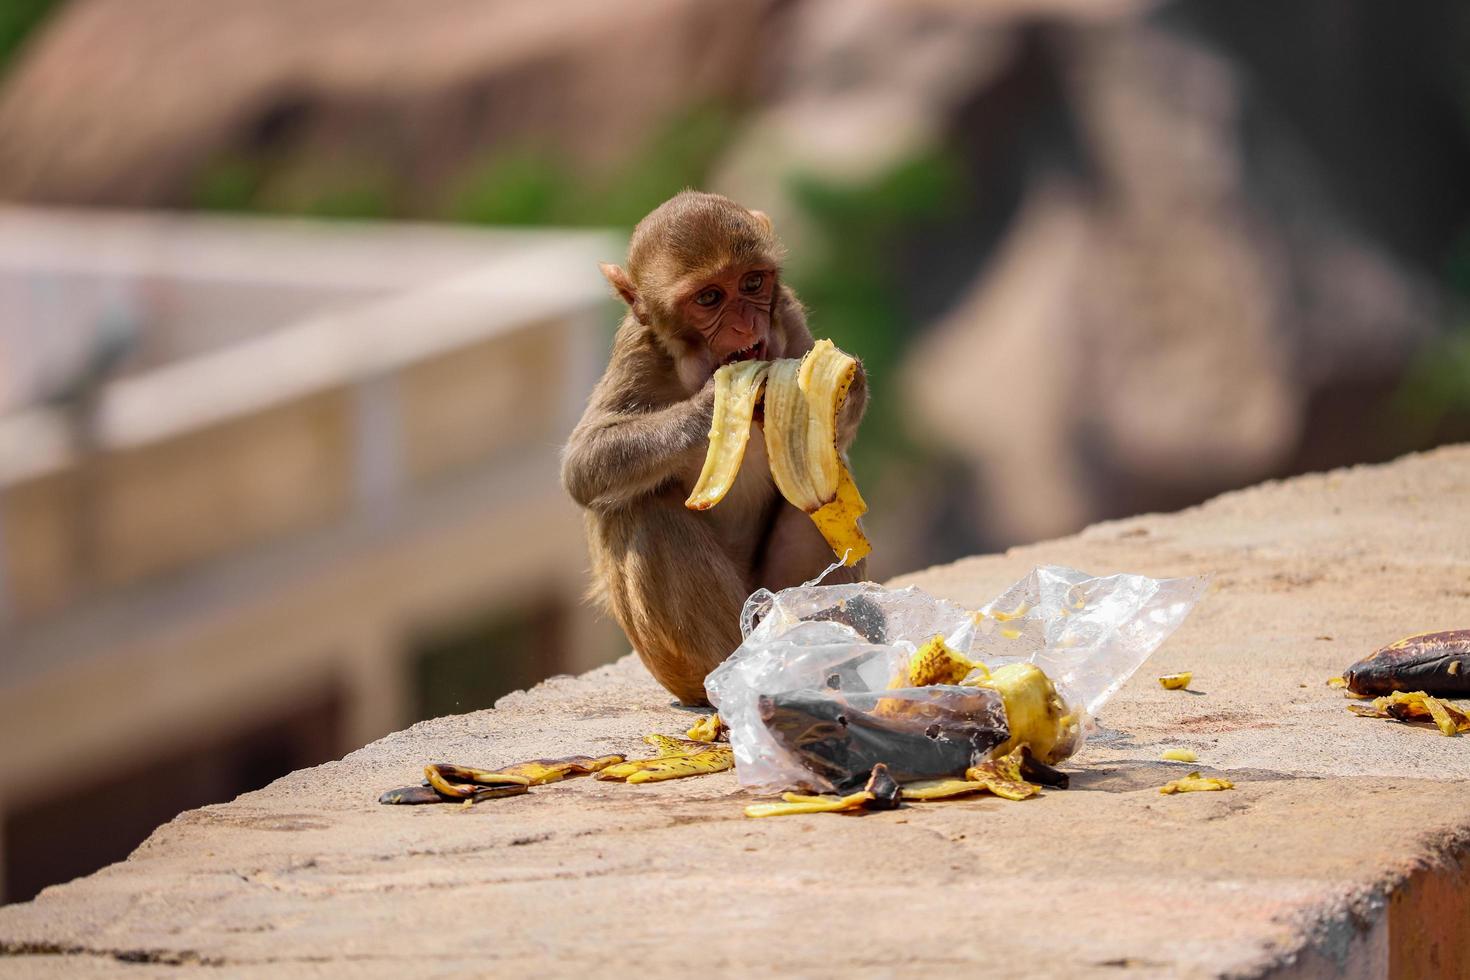 rhesus makaak aap, aap zittend op de muur, banaan etend foto